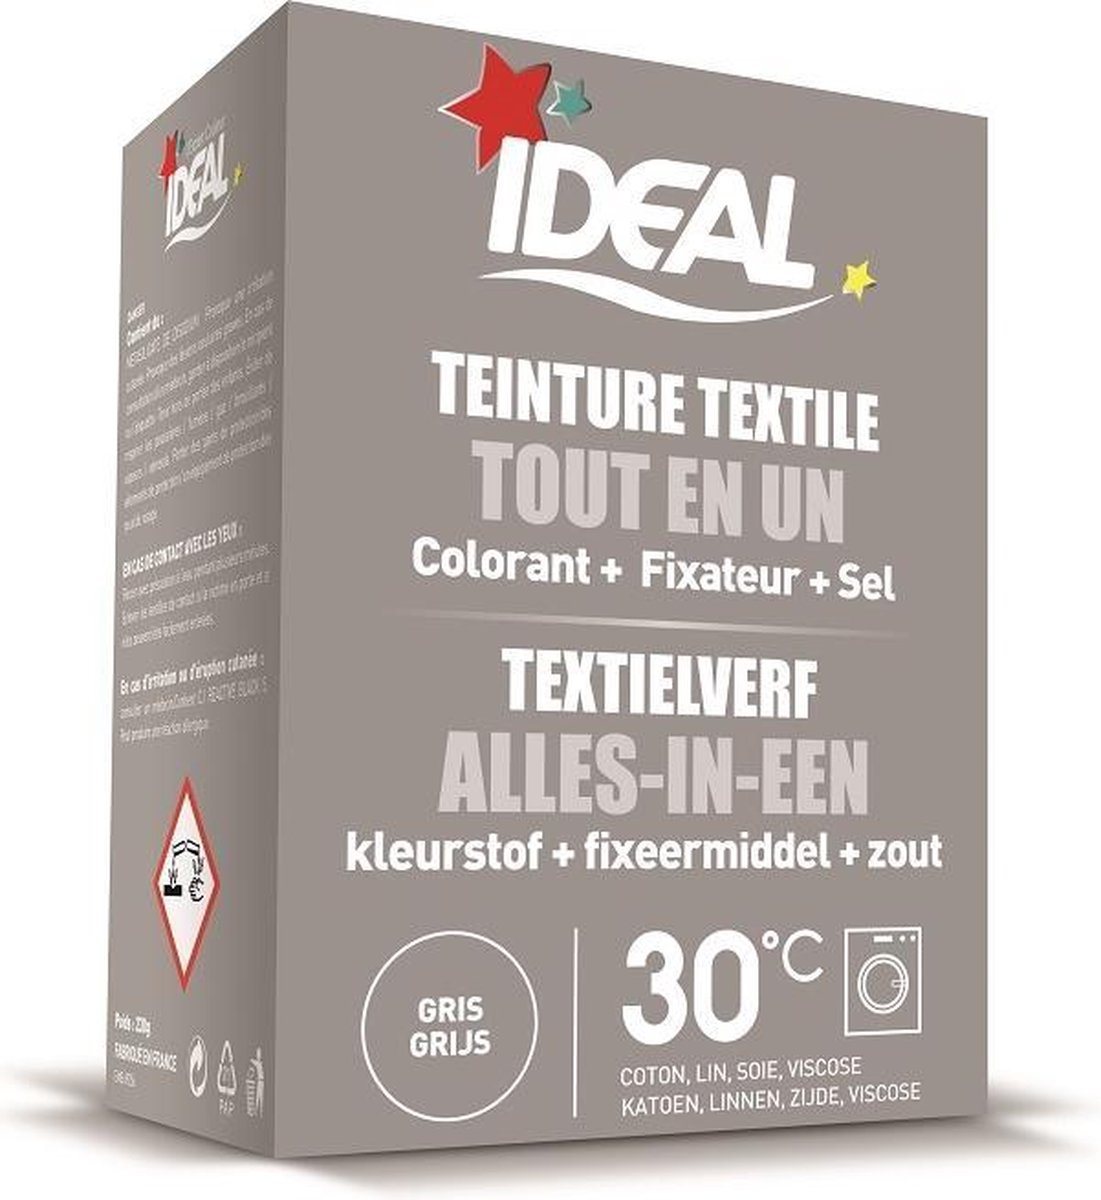 Teinture textile IDEAL Noire 0.35 kilogramme